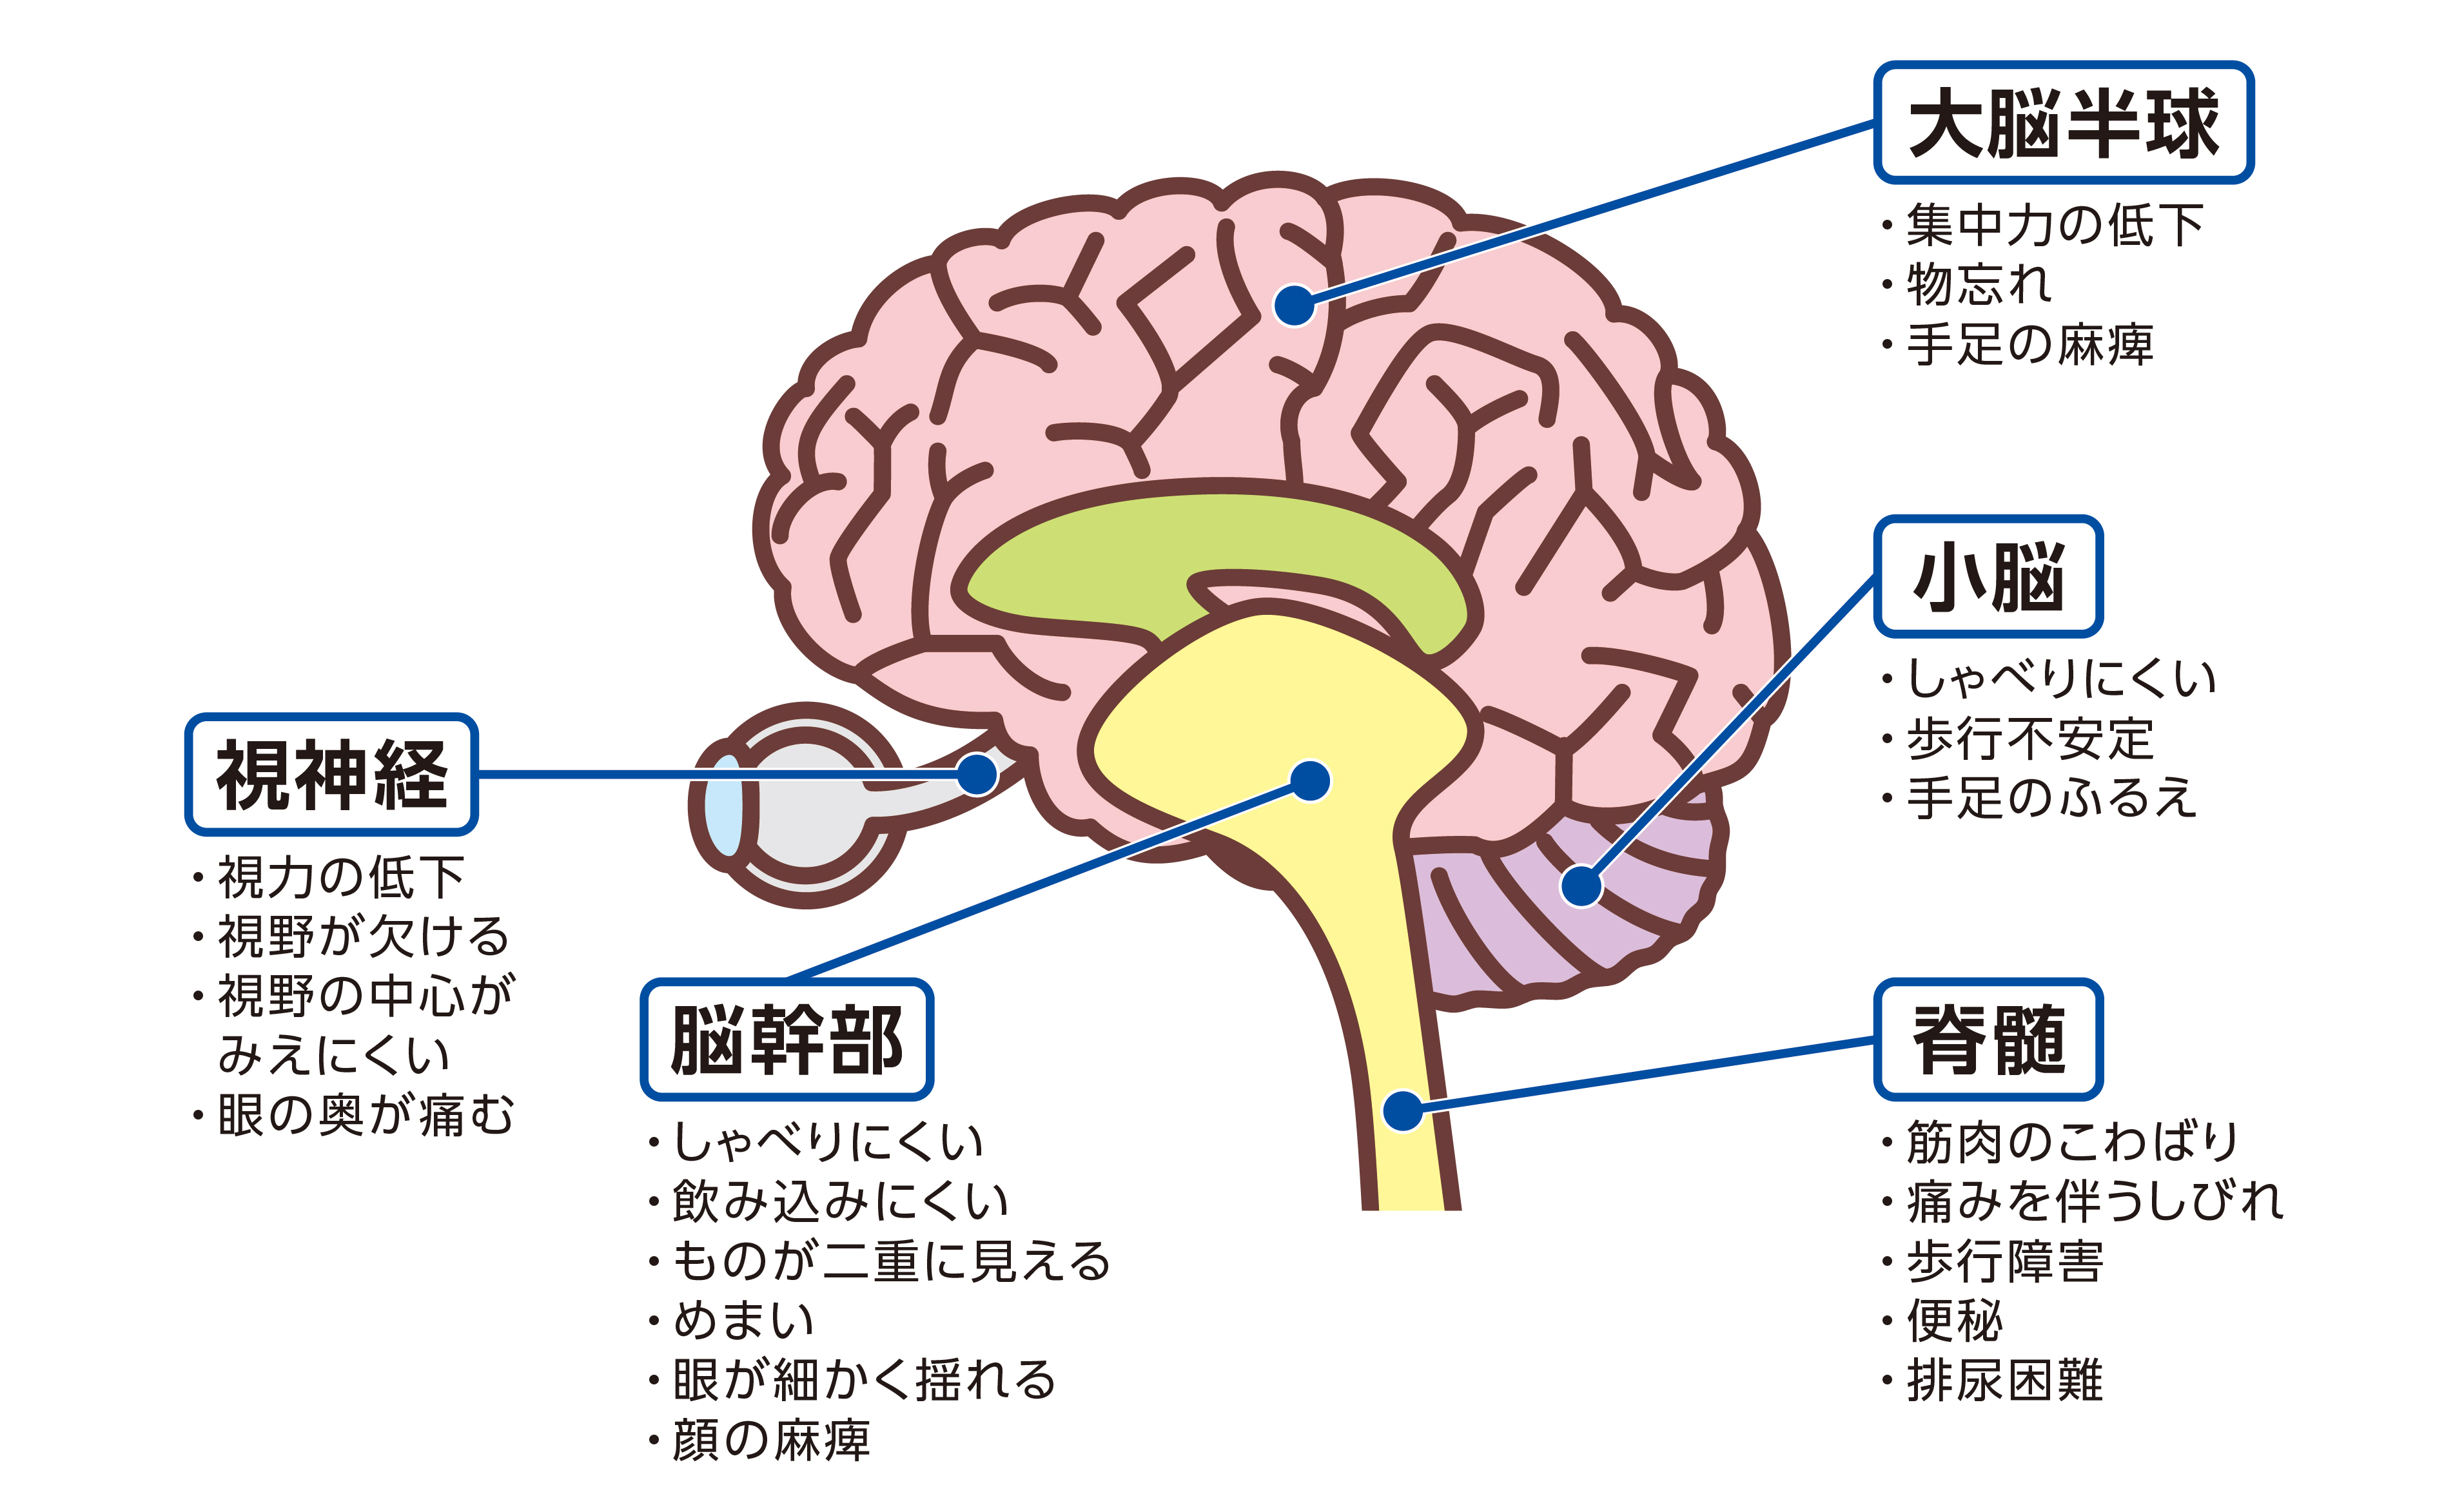 多発性硬化症（MS）にあらわれる脳の部位ごとの主な症状：視神経、脳幹部、大脳半球、小脳、脊髄